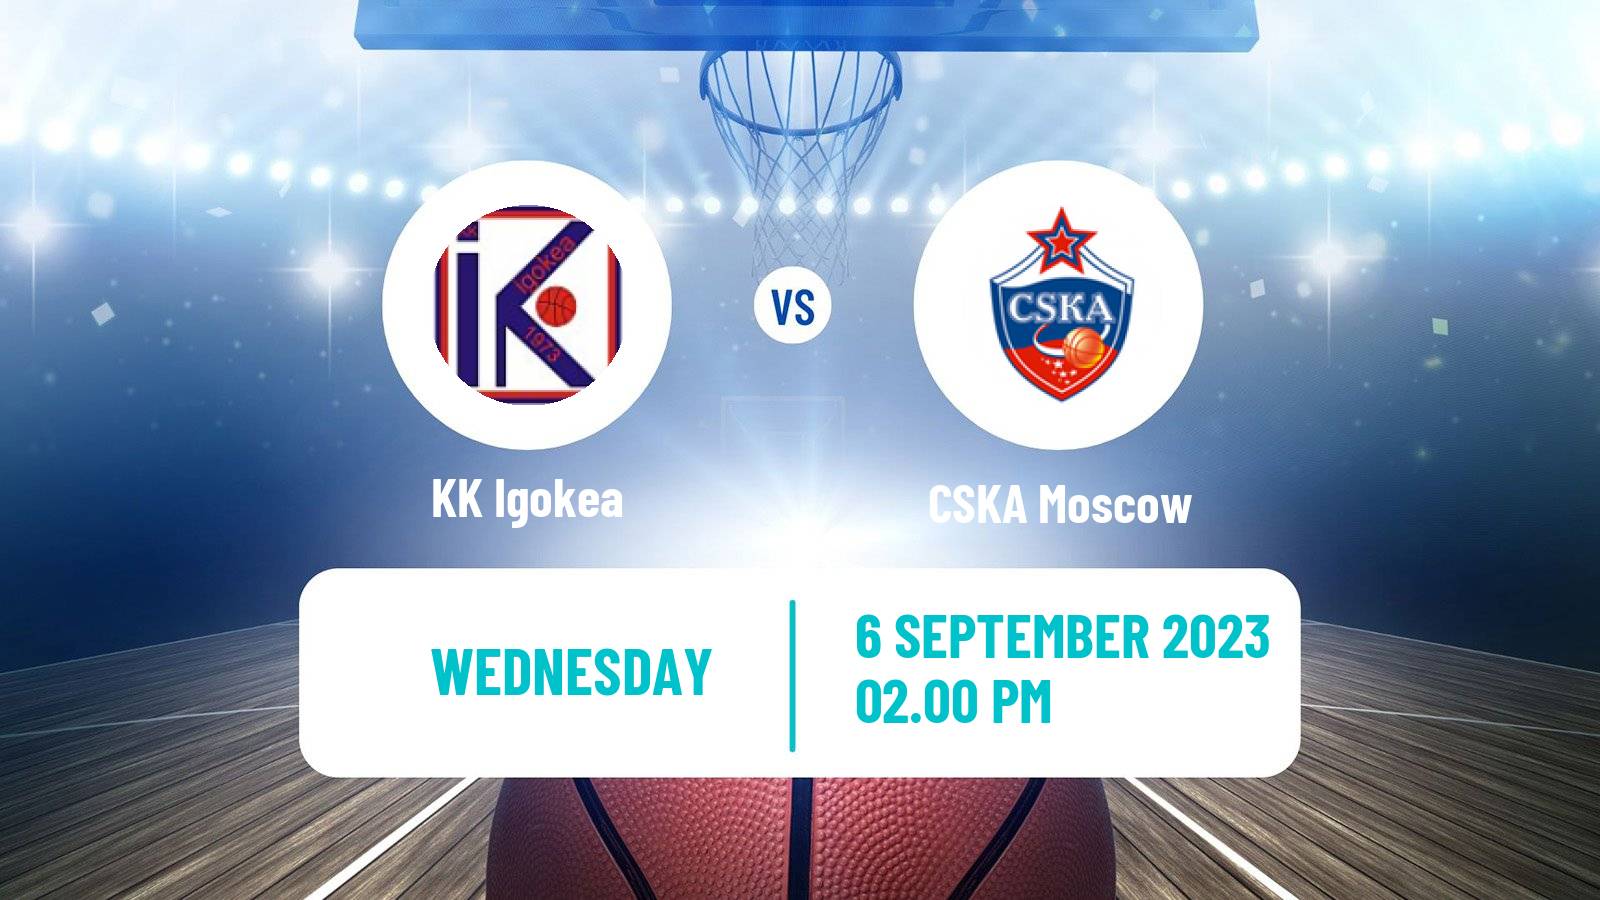 Basketball Club Friendly Basketball Igokea - CSKA Moscow